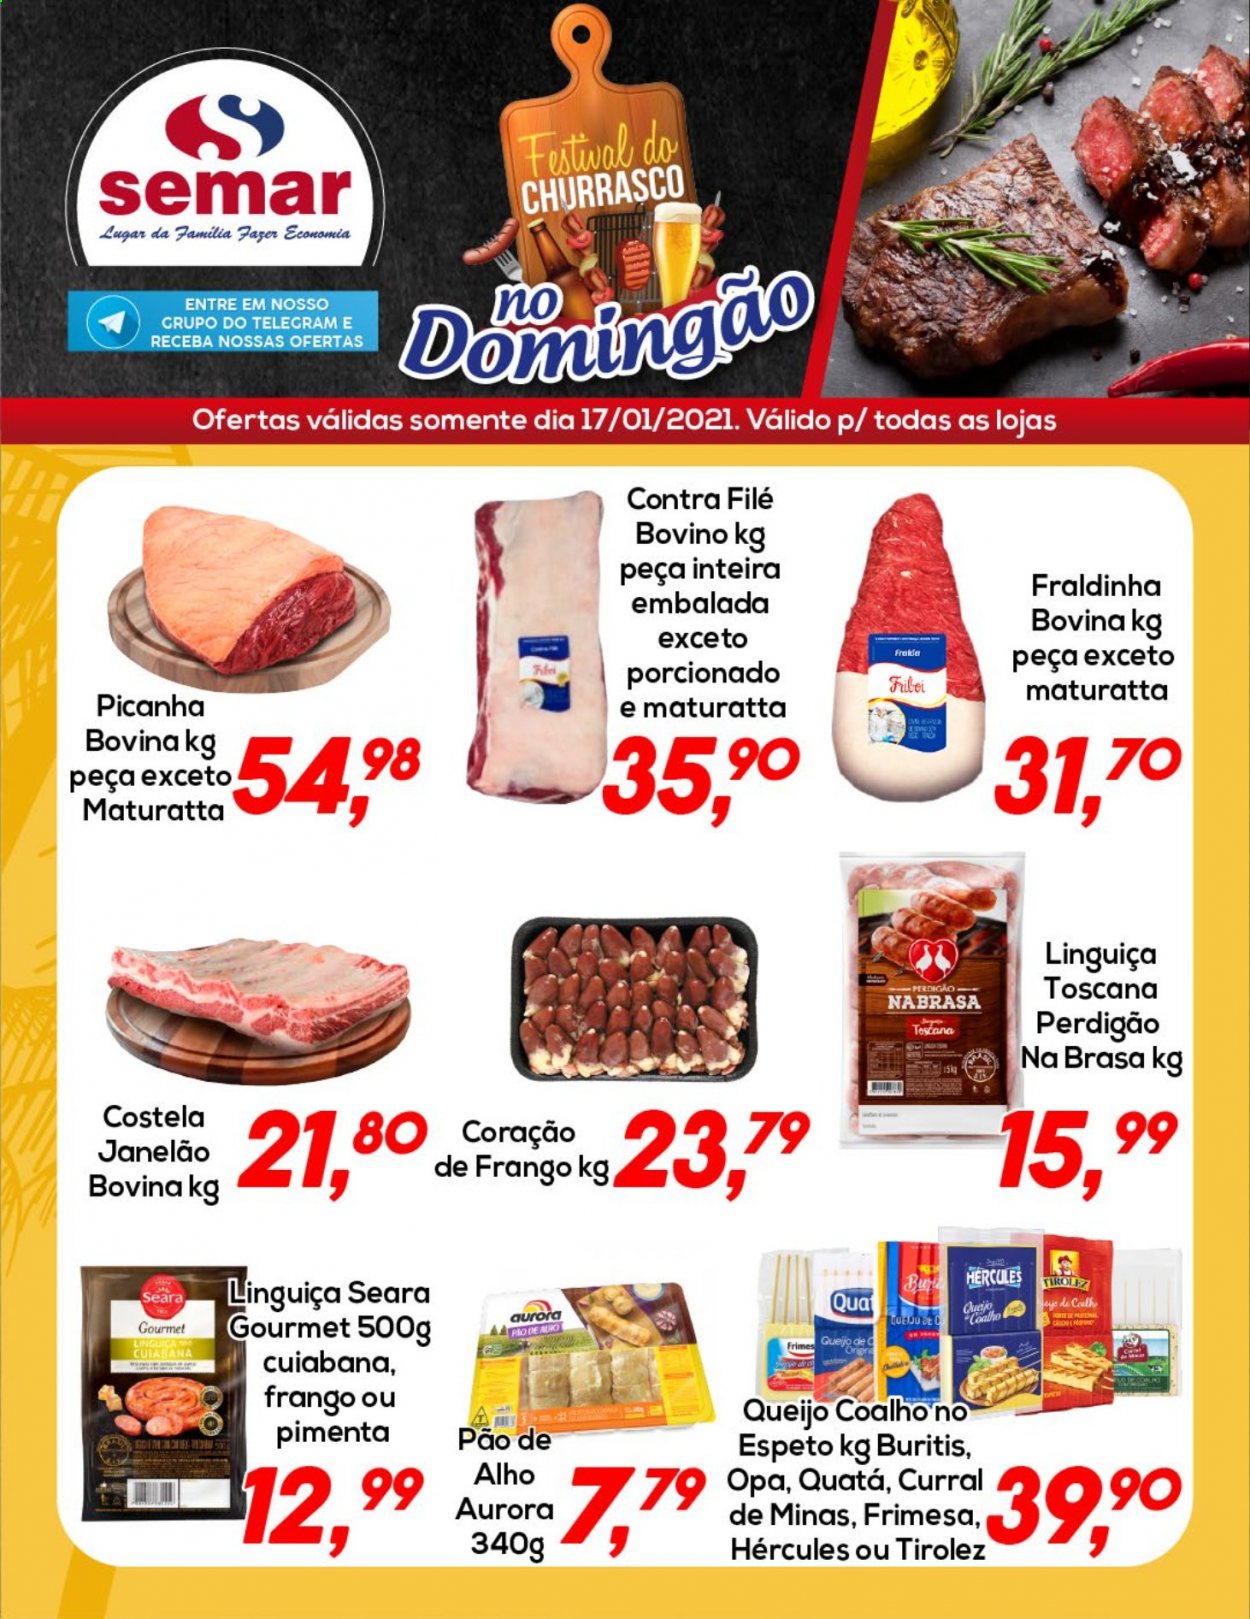 Encarte Semar Supermercados  - 17.01.2021 - 17.01.2021.